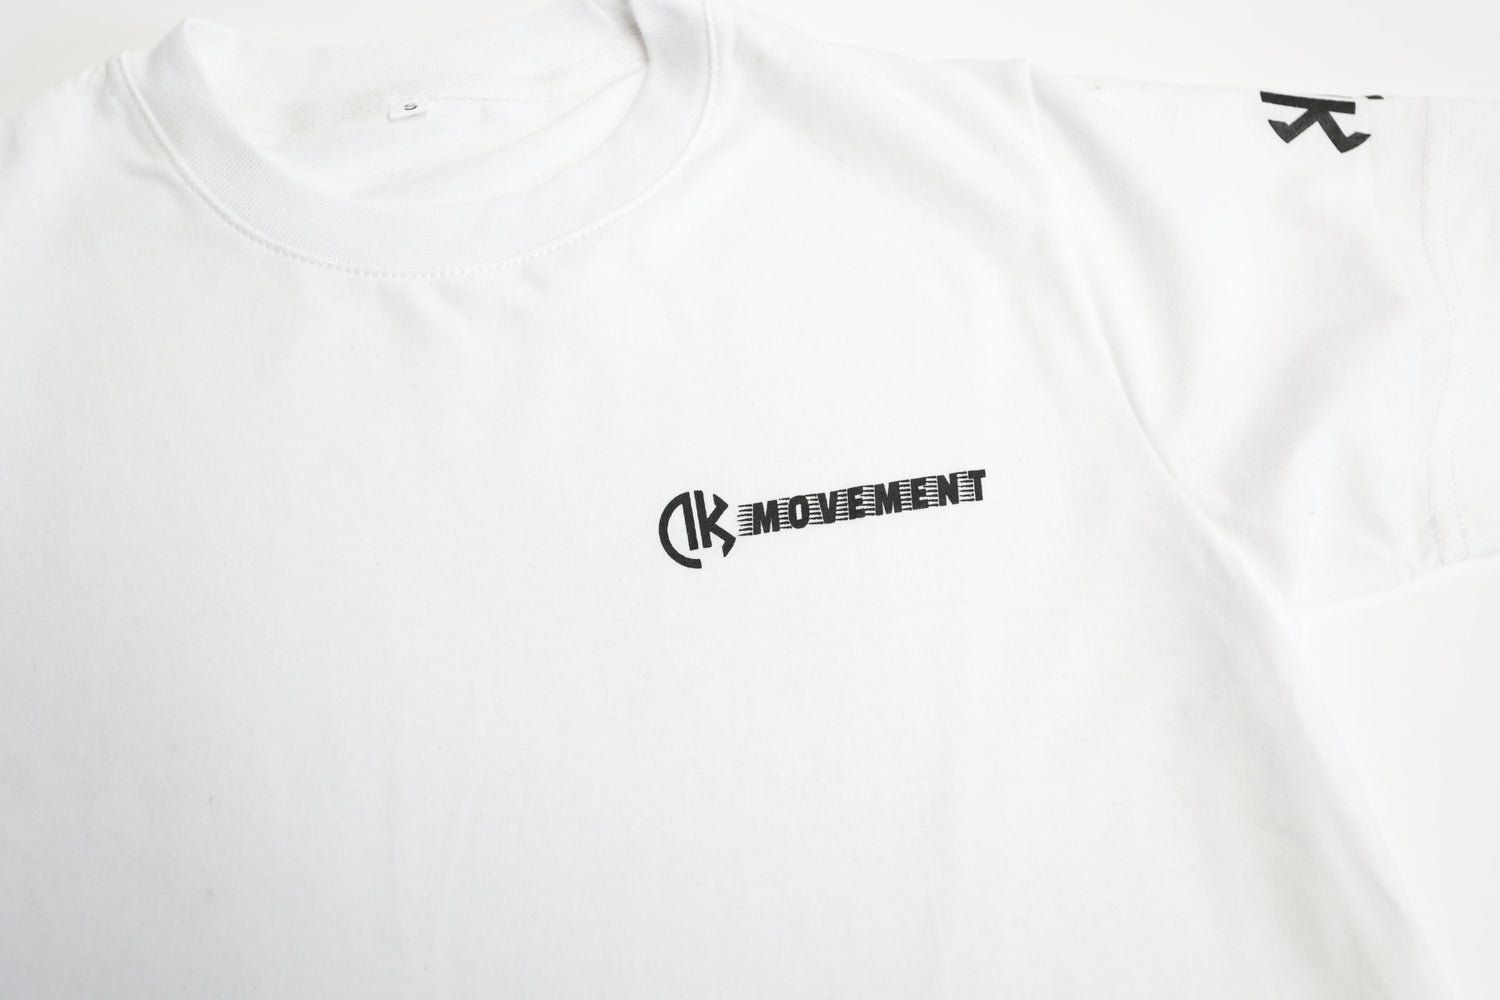 DK Movement T-Shirt - DK Movement Shirts & Tops